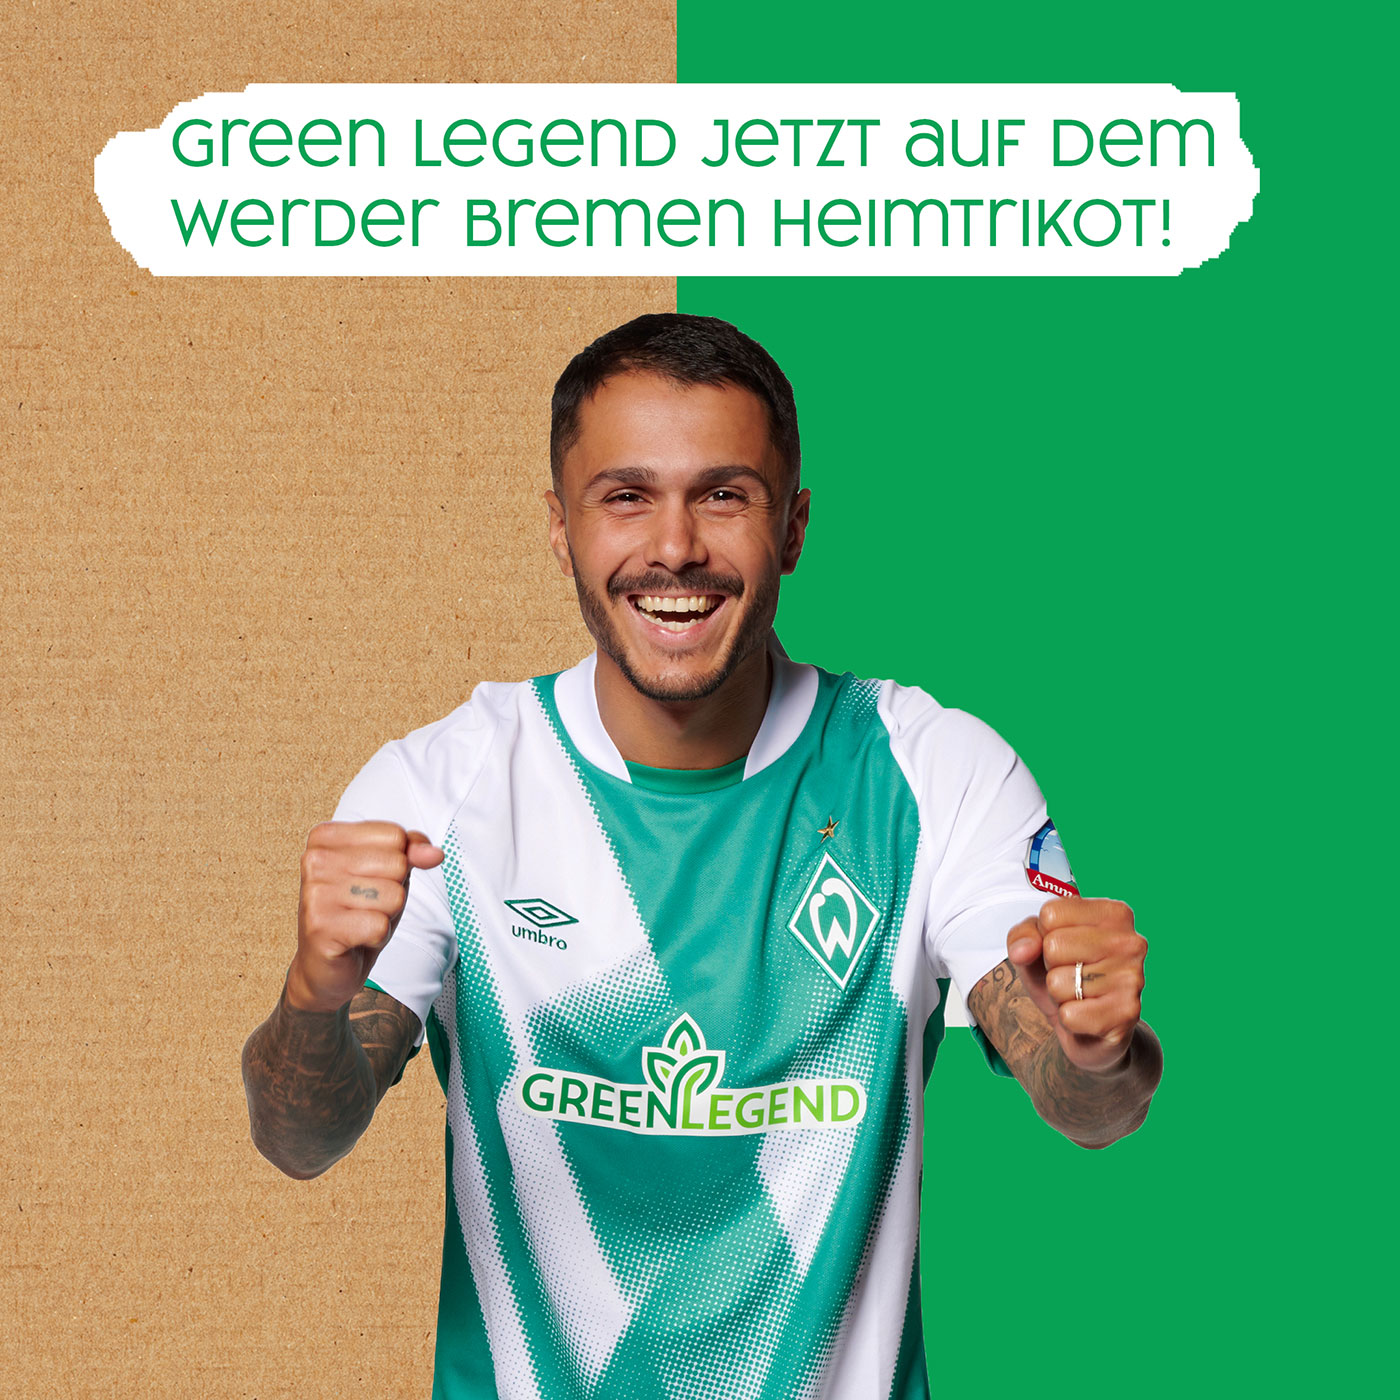 GREENLEGEND ziert jetzt das Werder Bremen Heimtrikot